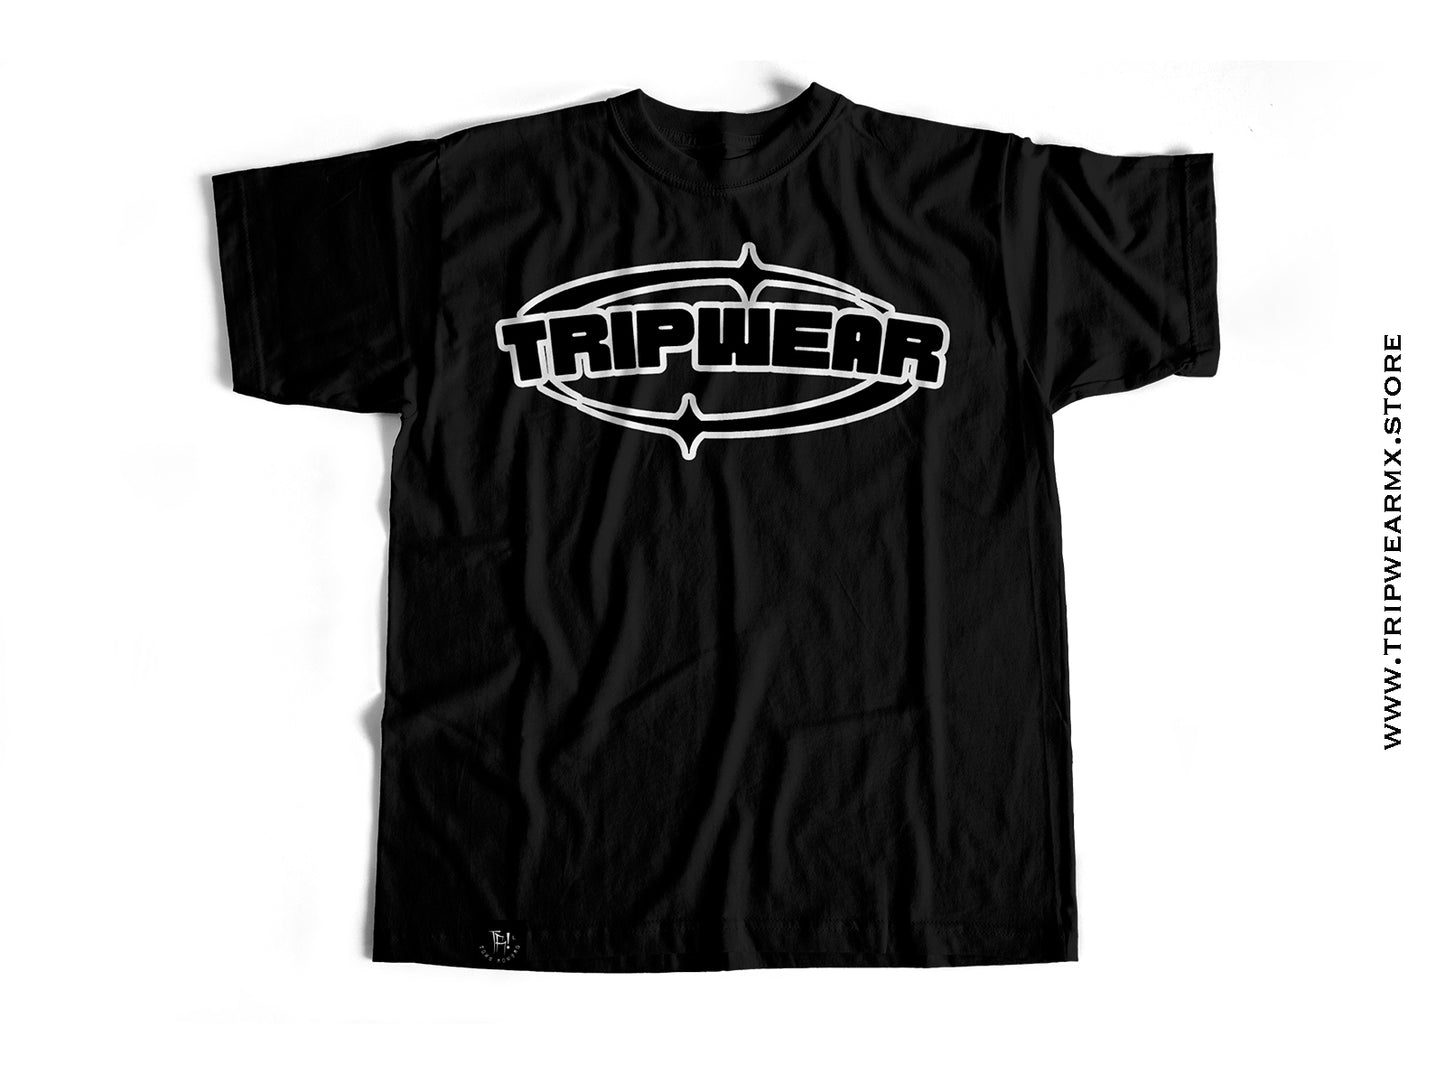 "TRIPWEAR" Black Tee.